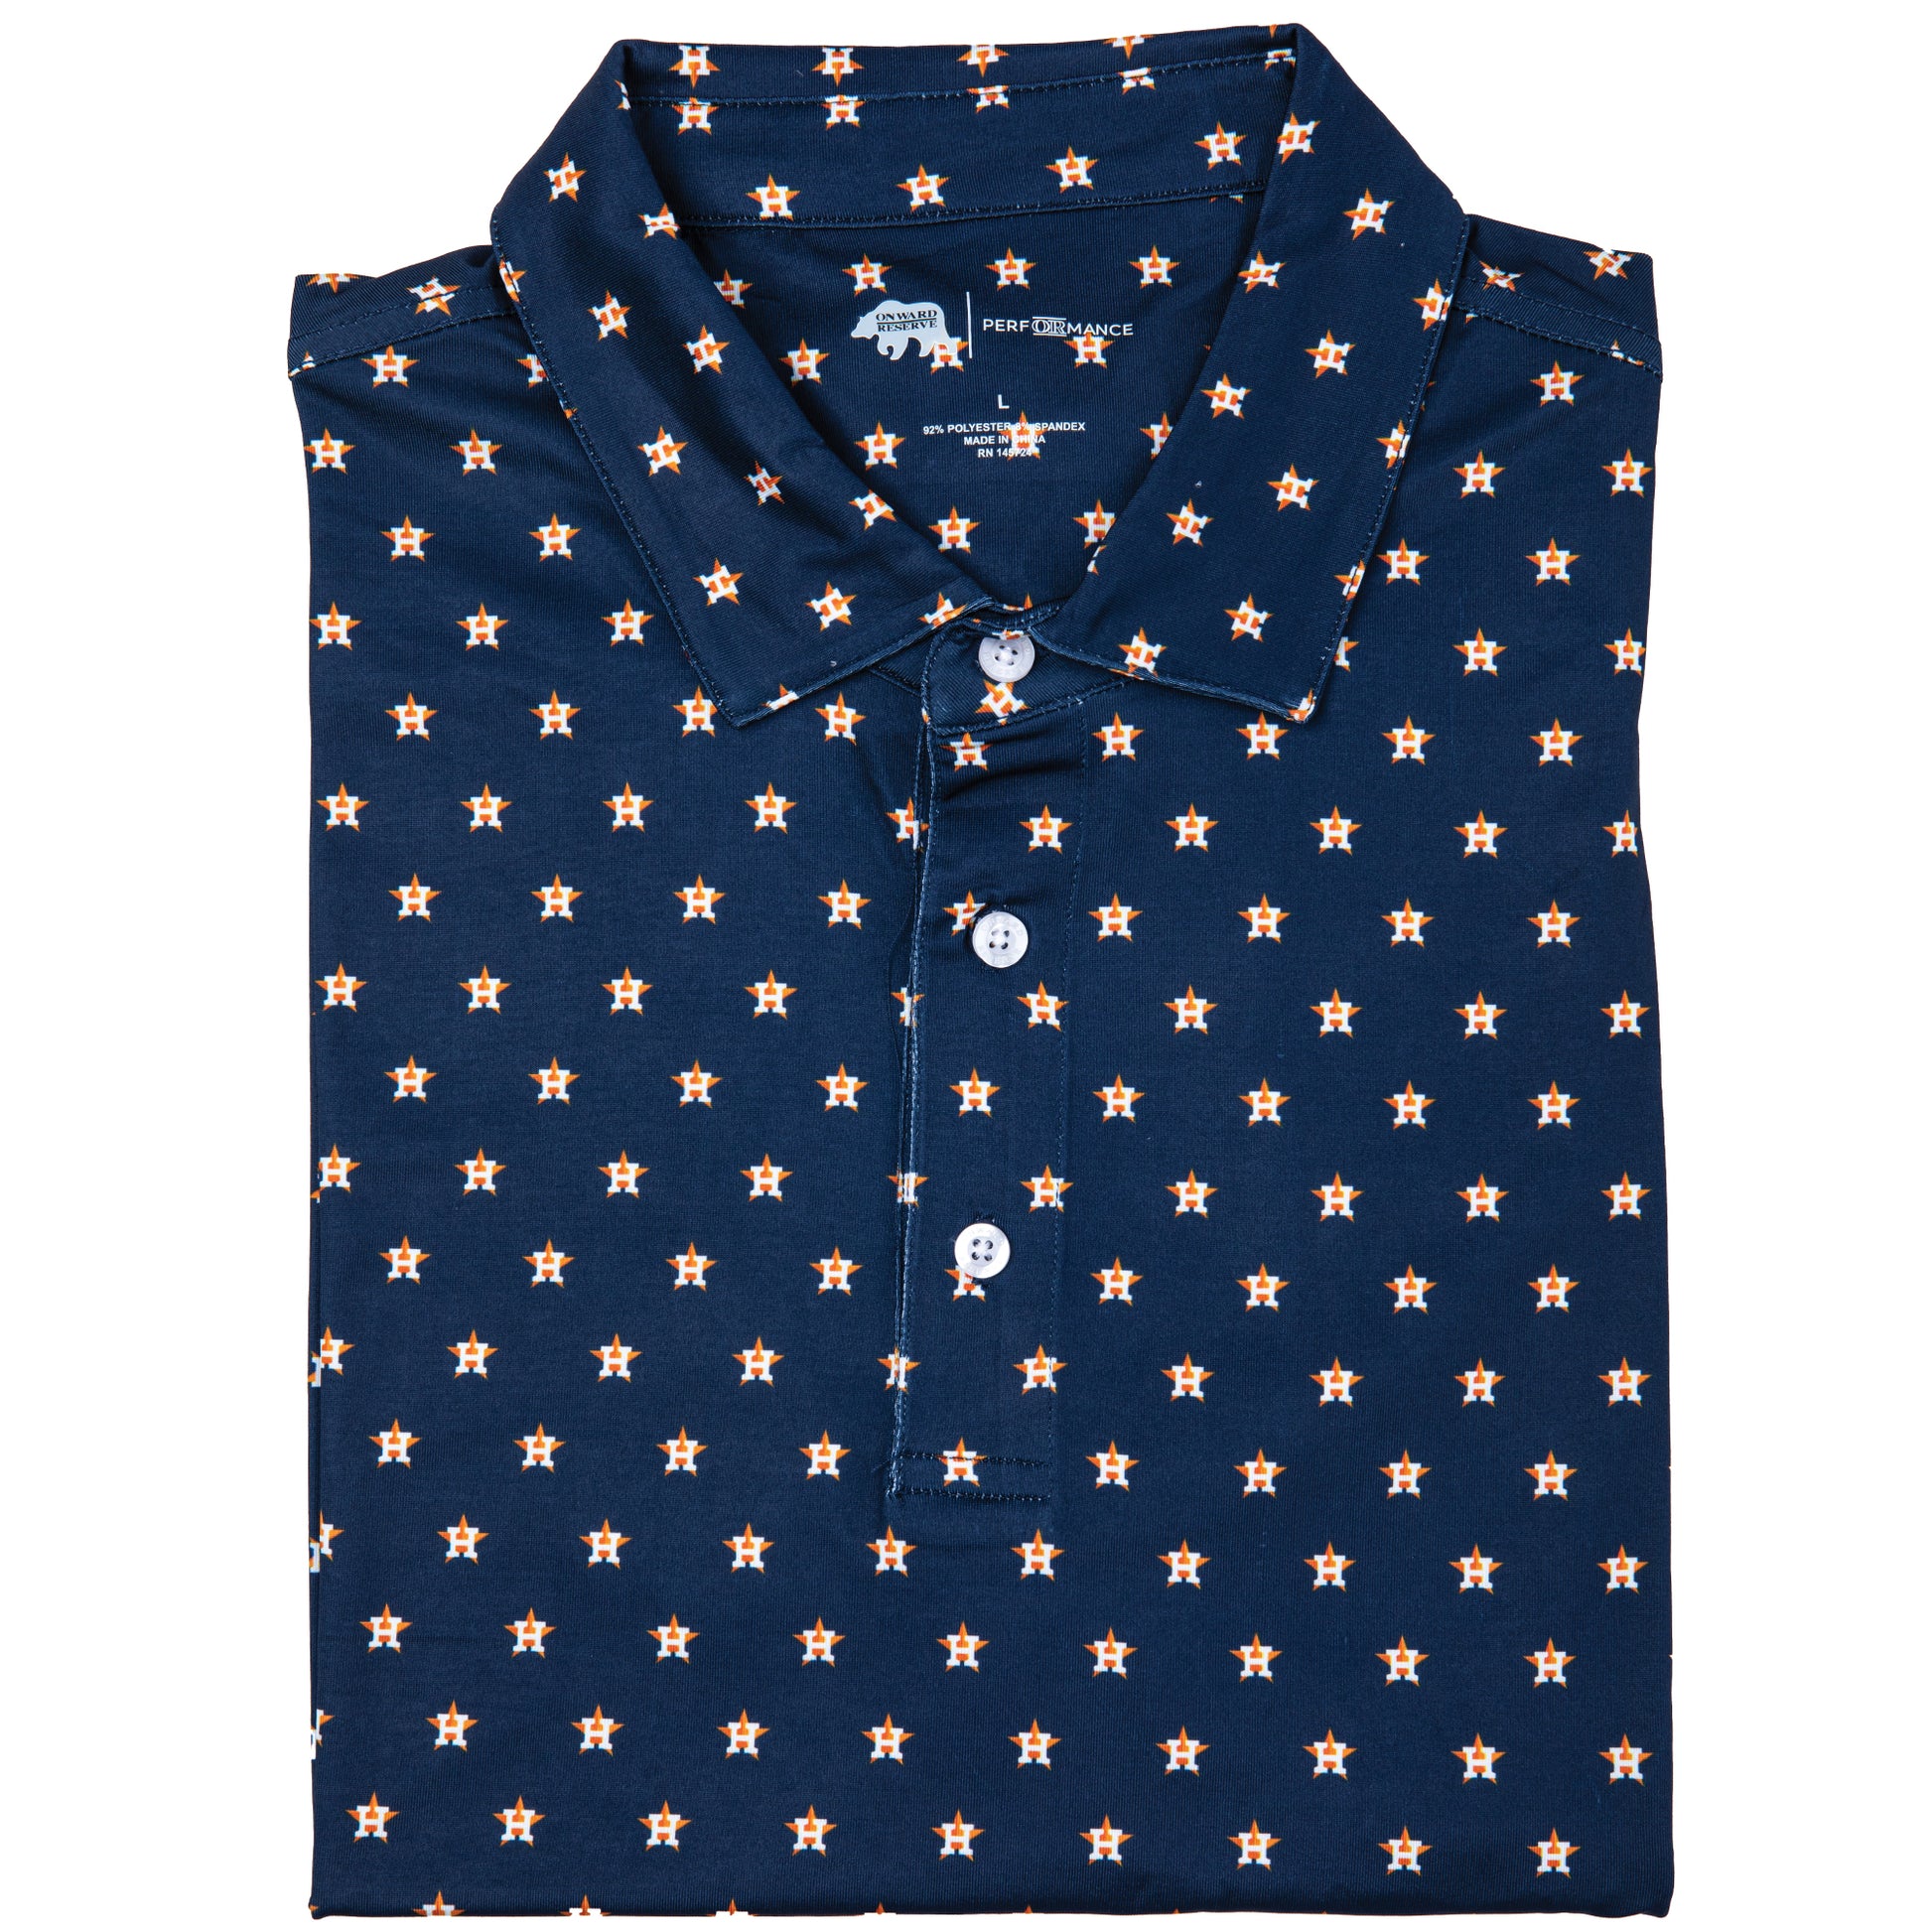 Astros Team Print S/S Button Down Shirt 